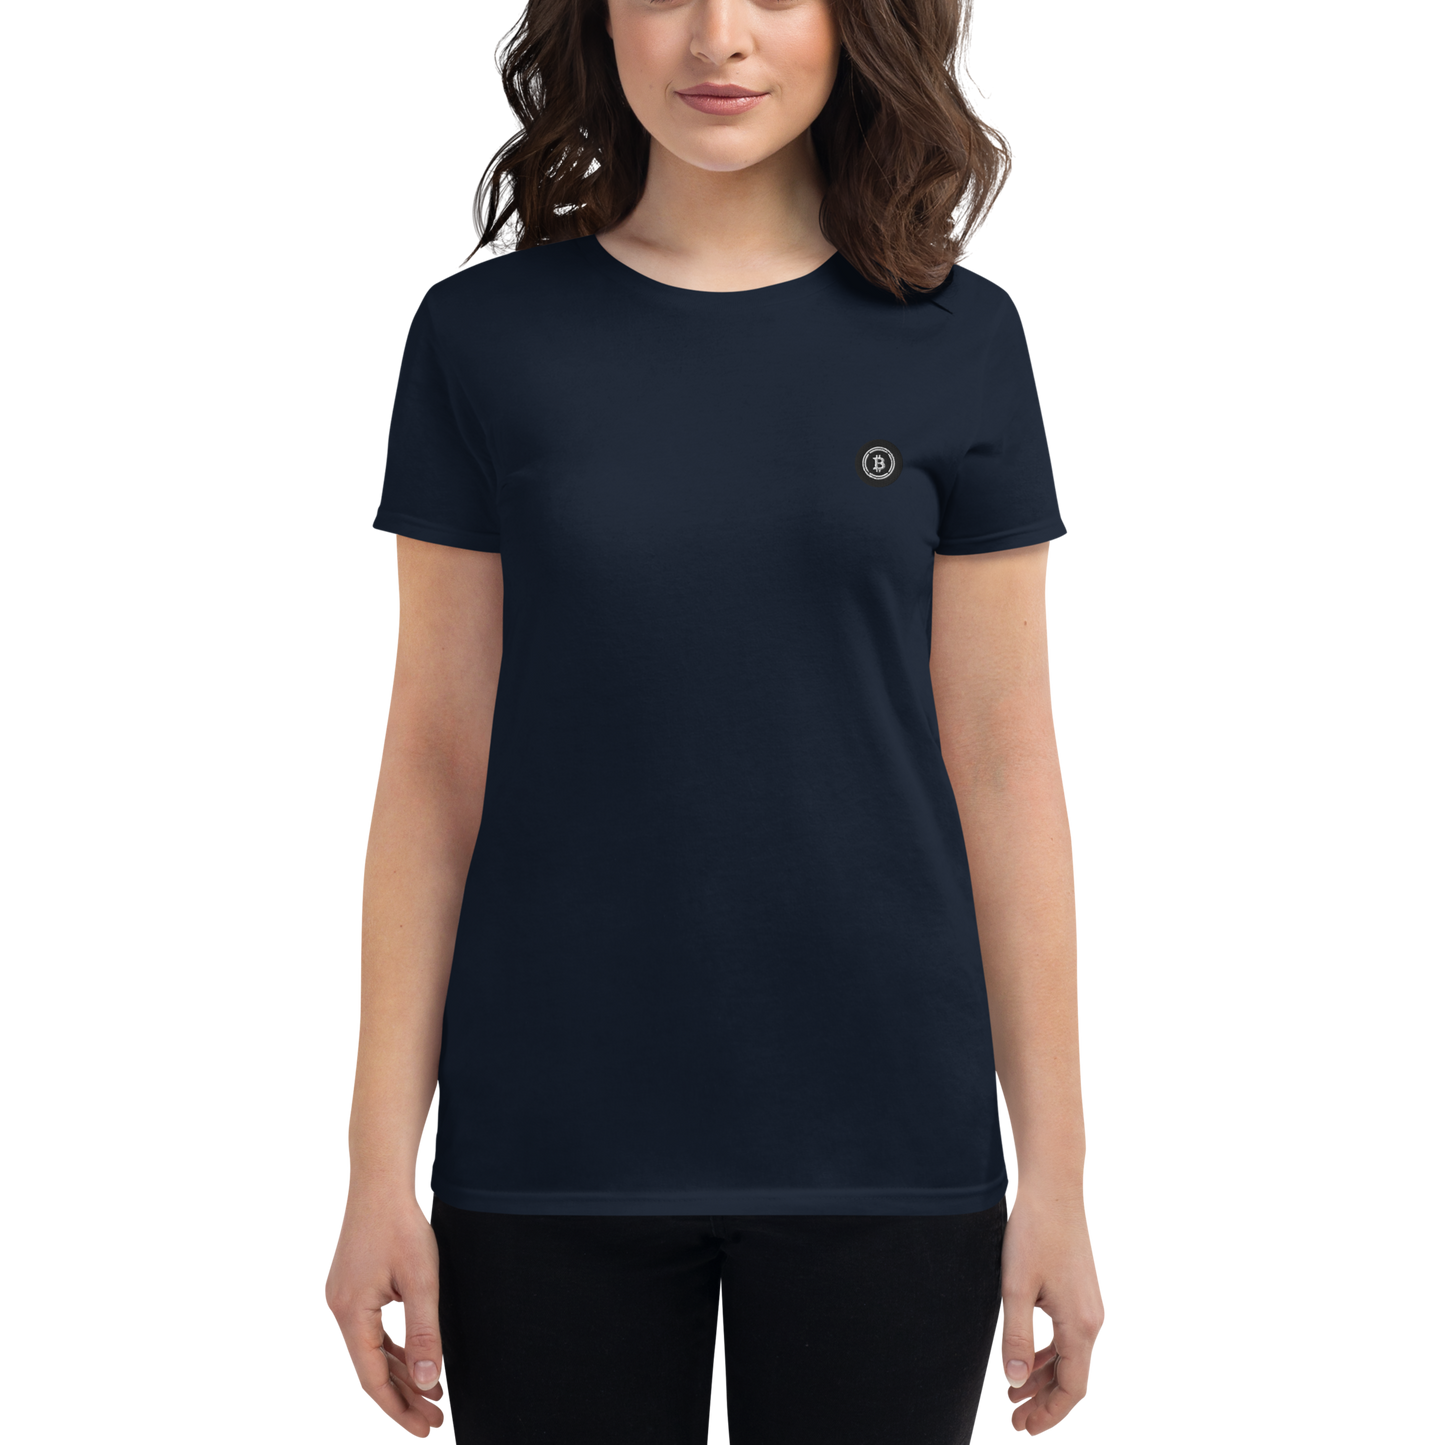 Wrapped Bitcoin (WBTC) - Women's short sleeve t-shirt